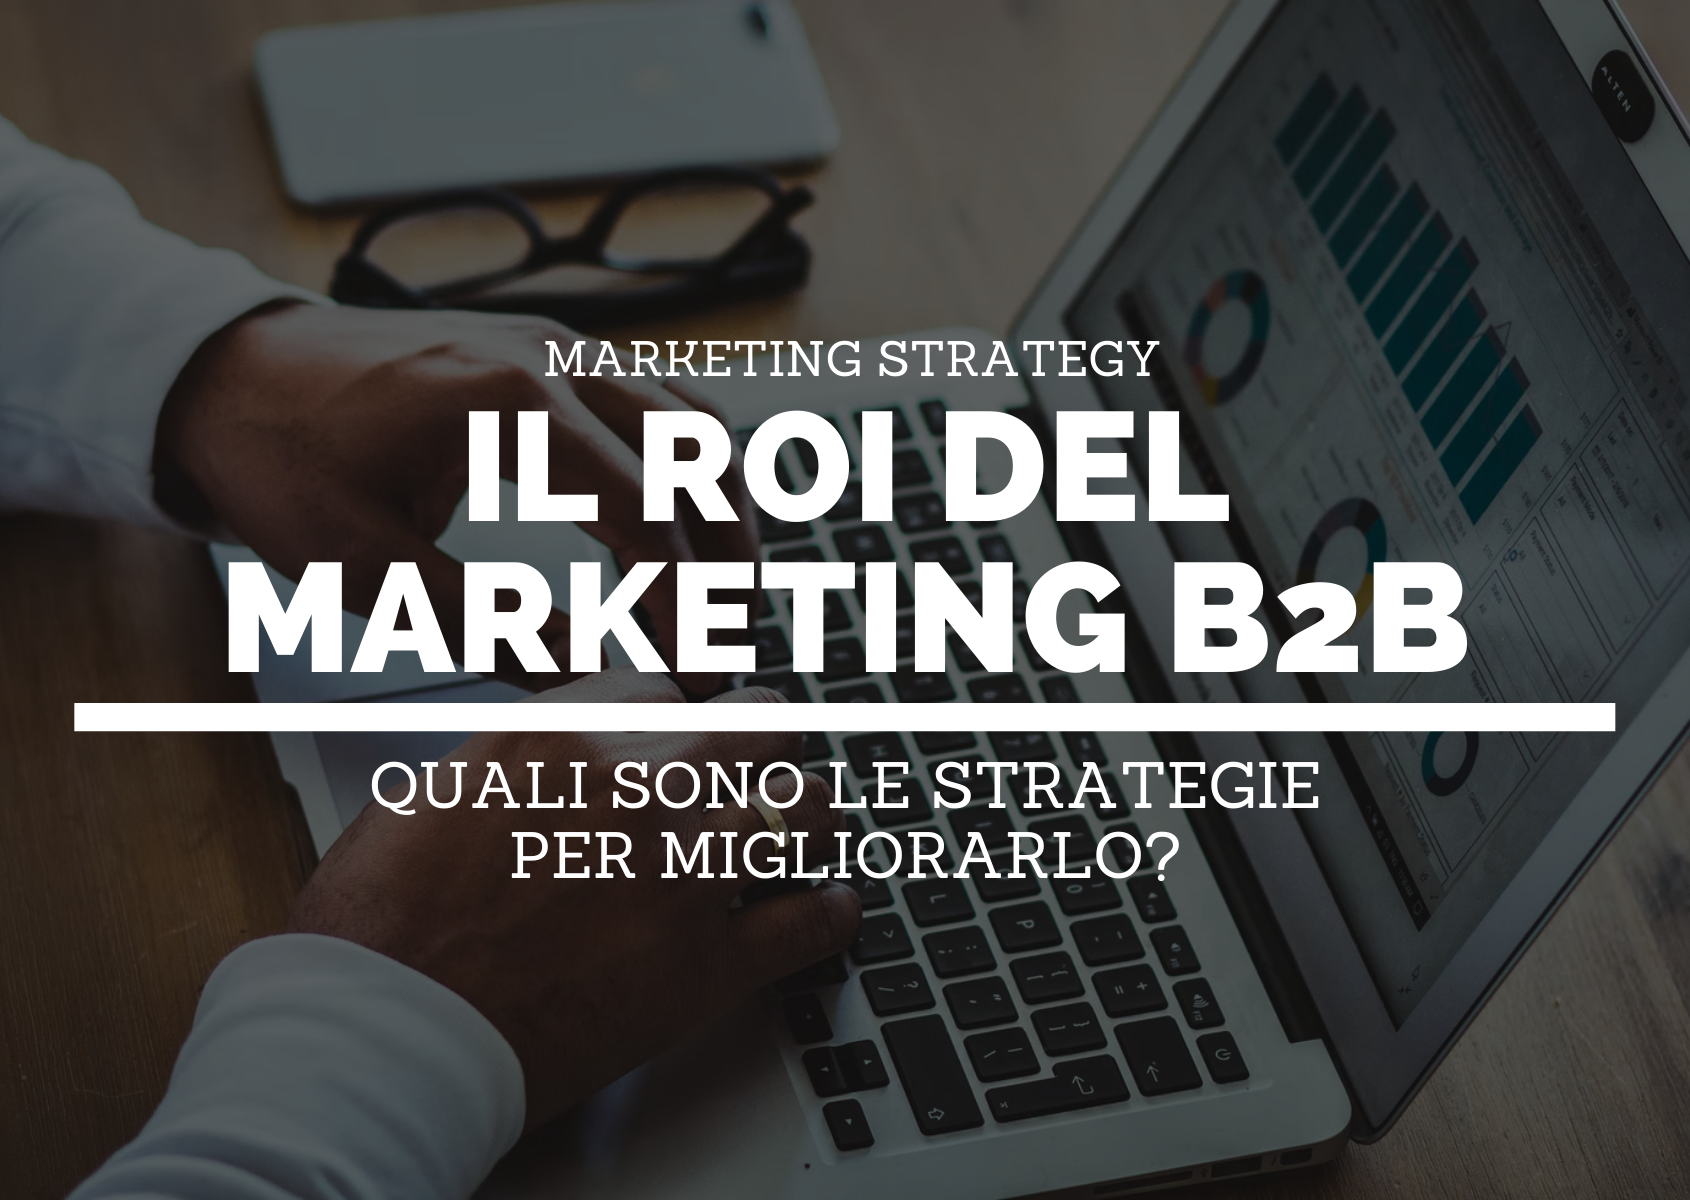 Marketing-b2b-ROI-HEADER